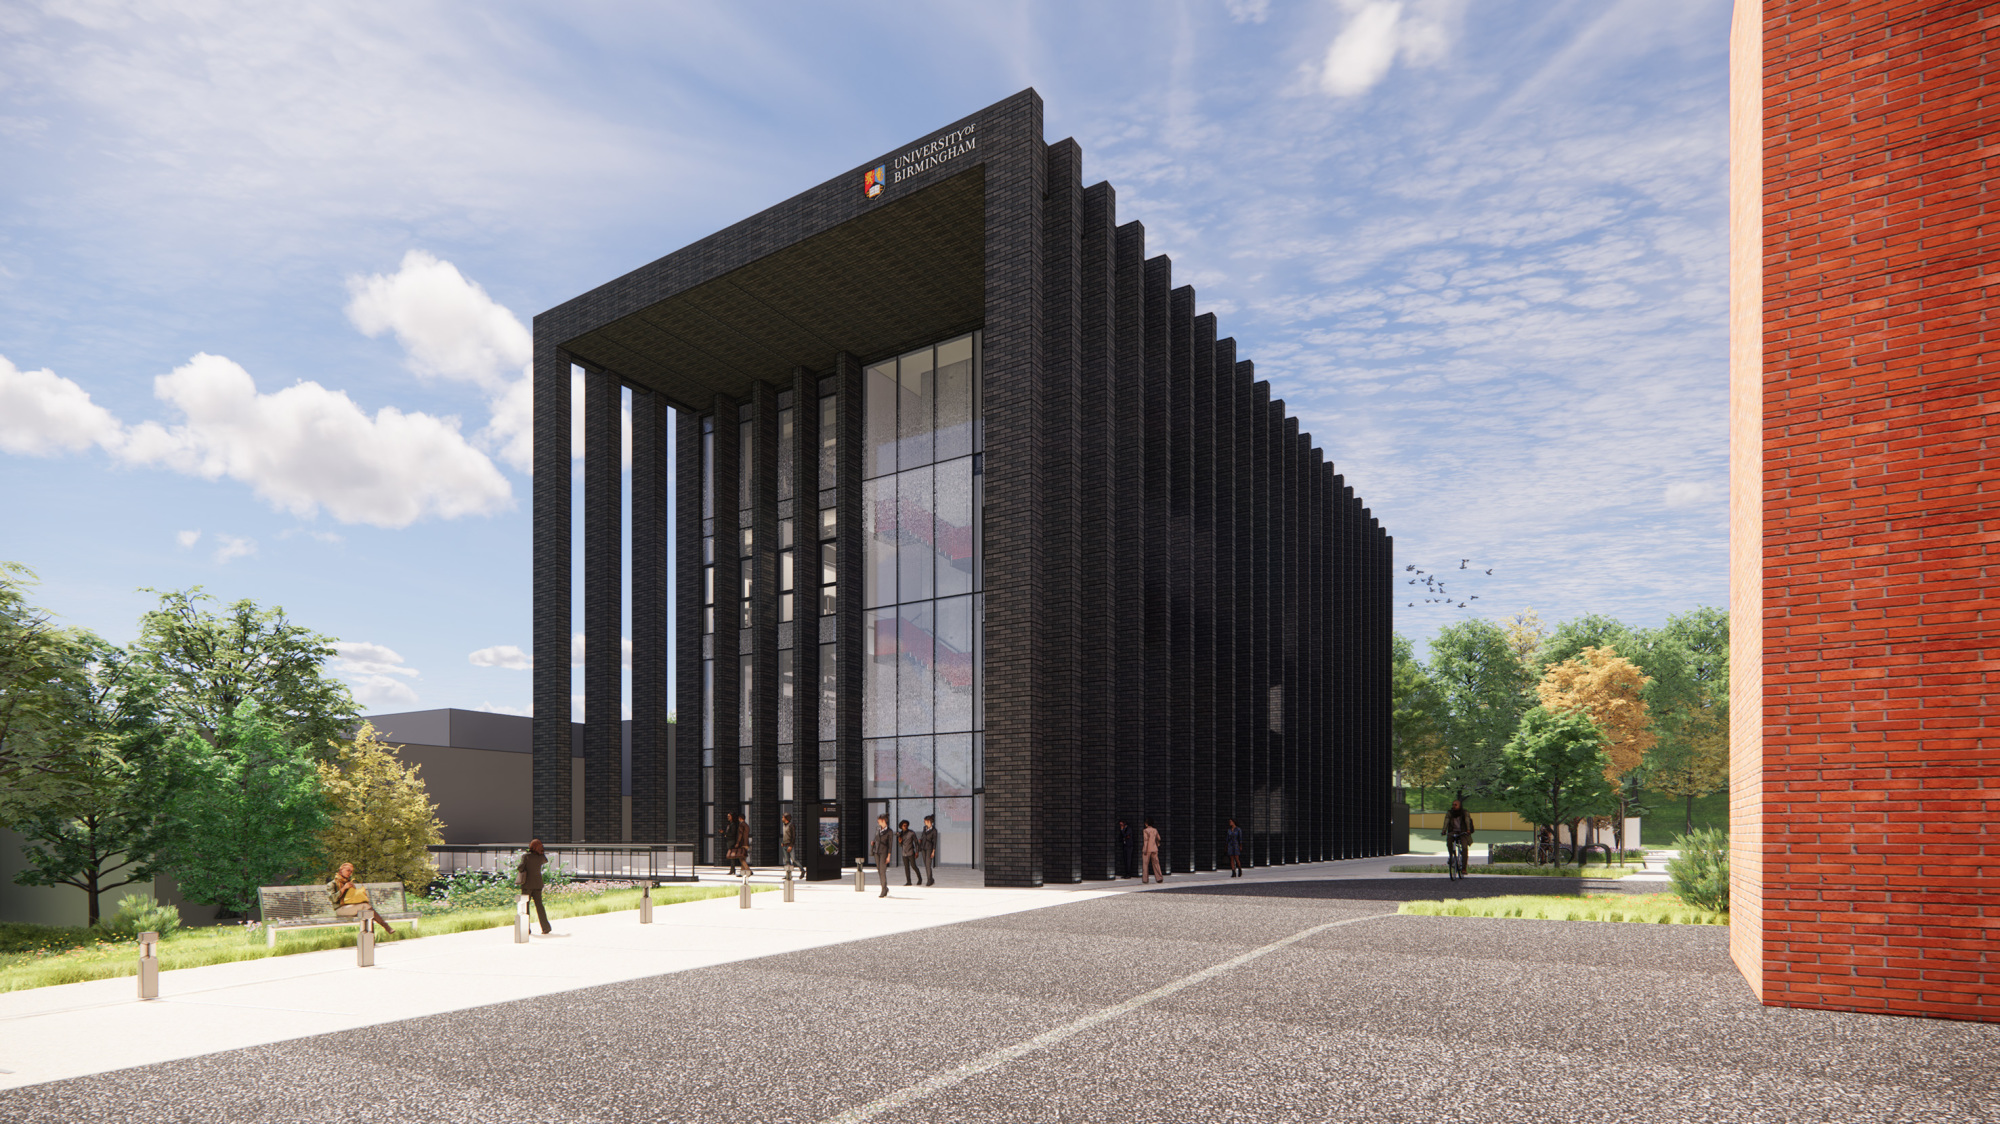 University of Birmingham Announces New Net-Zero Carbon Smart Building